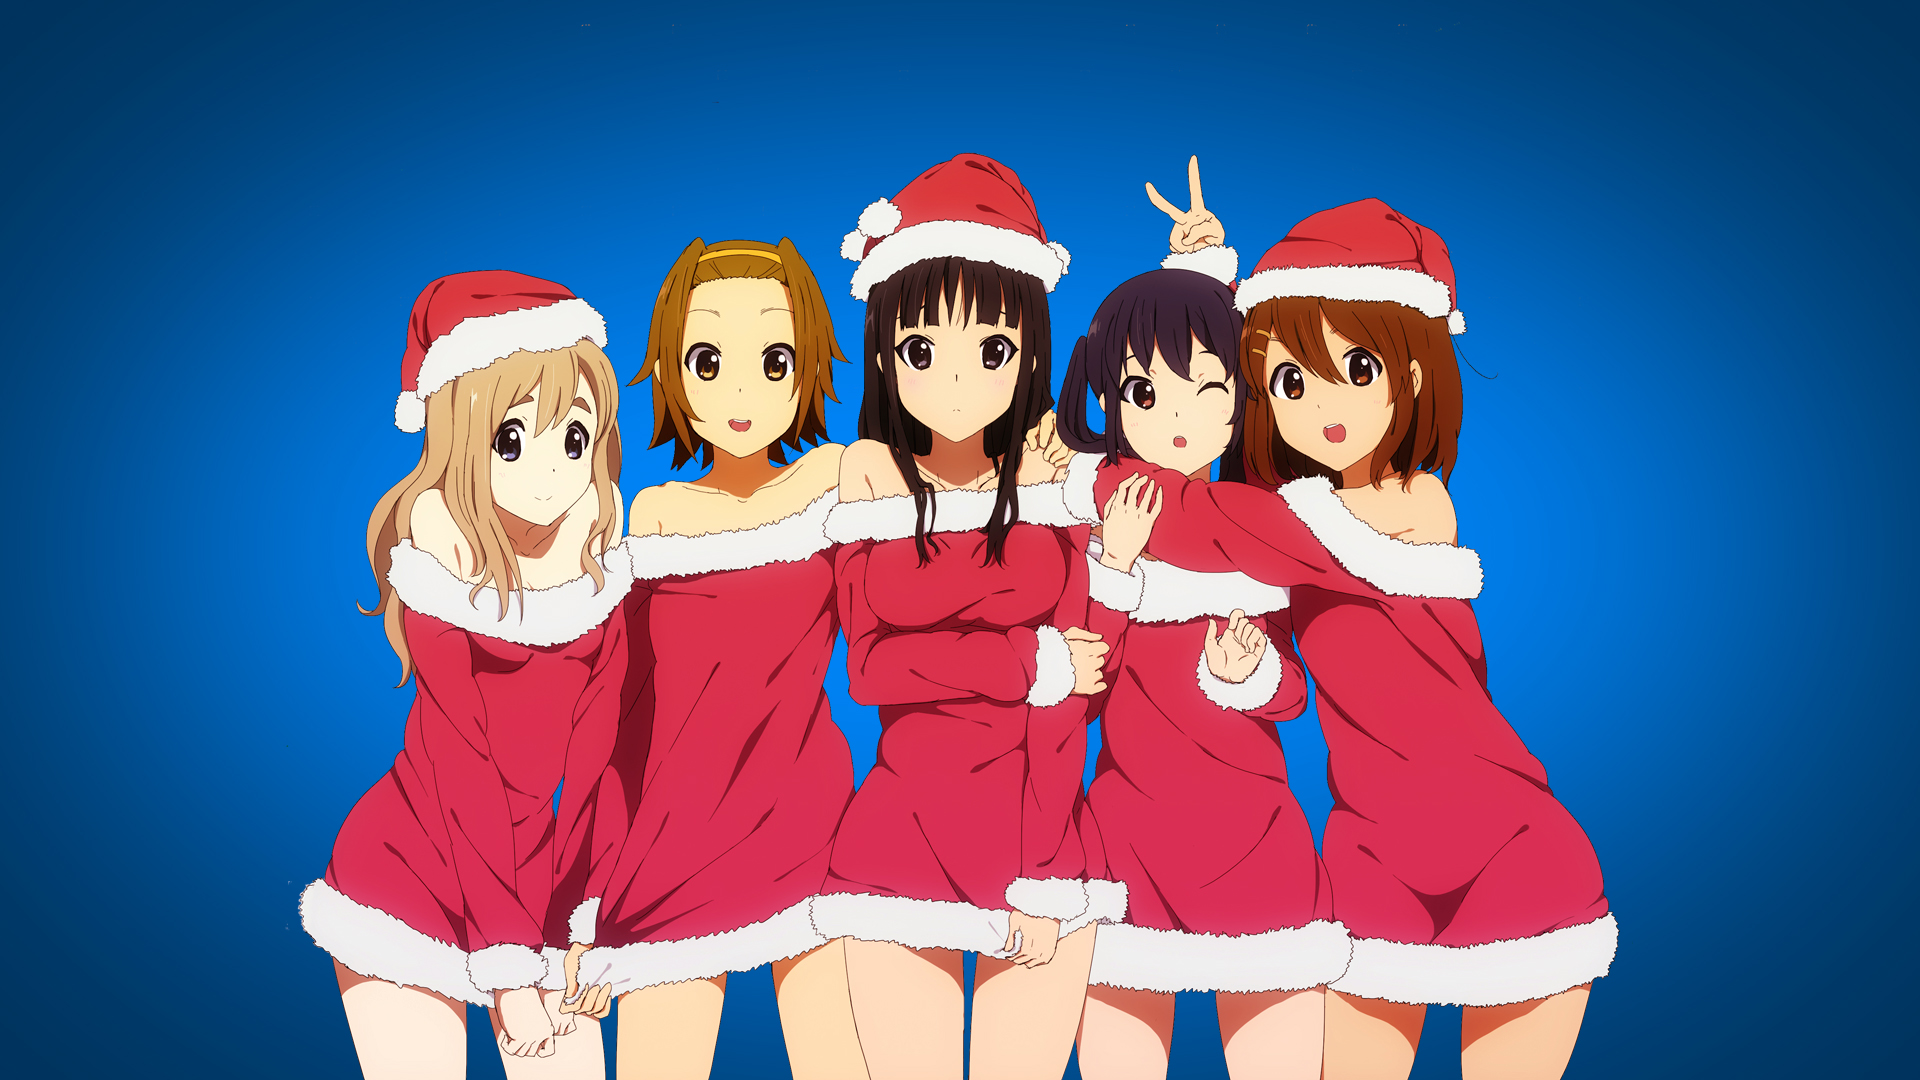 Cute Anime Girl Christmas Wallpapers HD 1920x1080